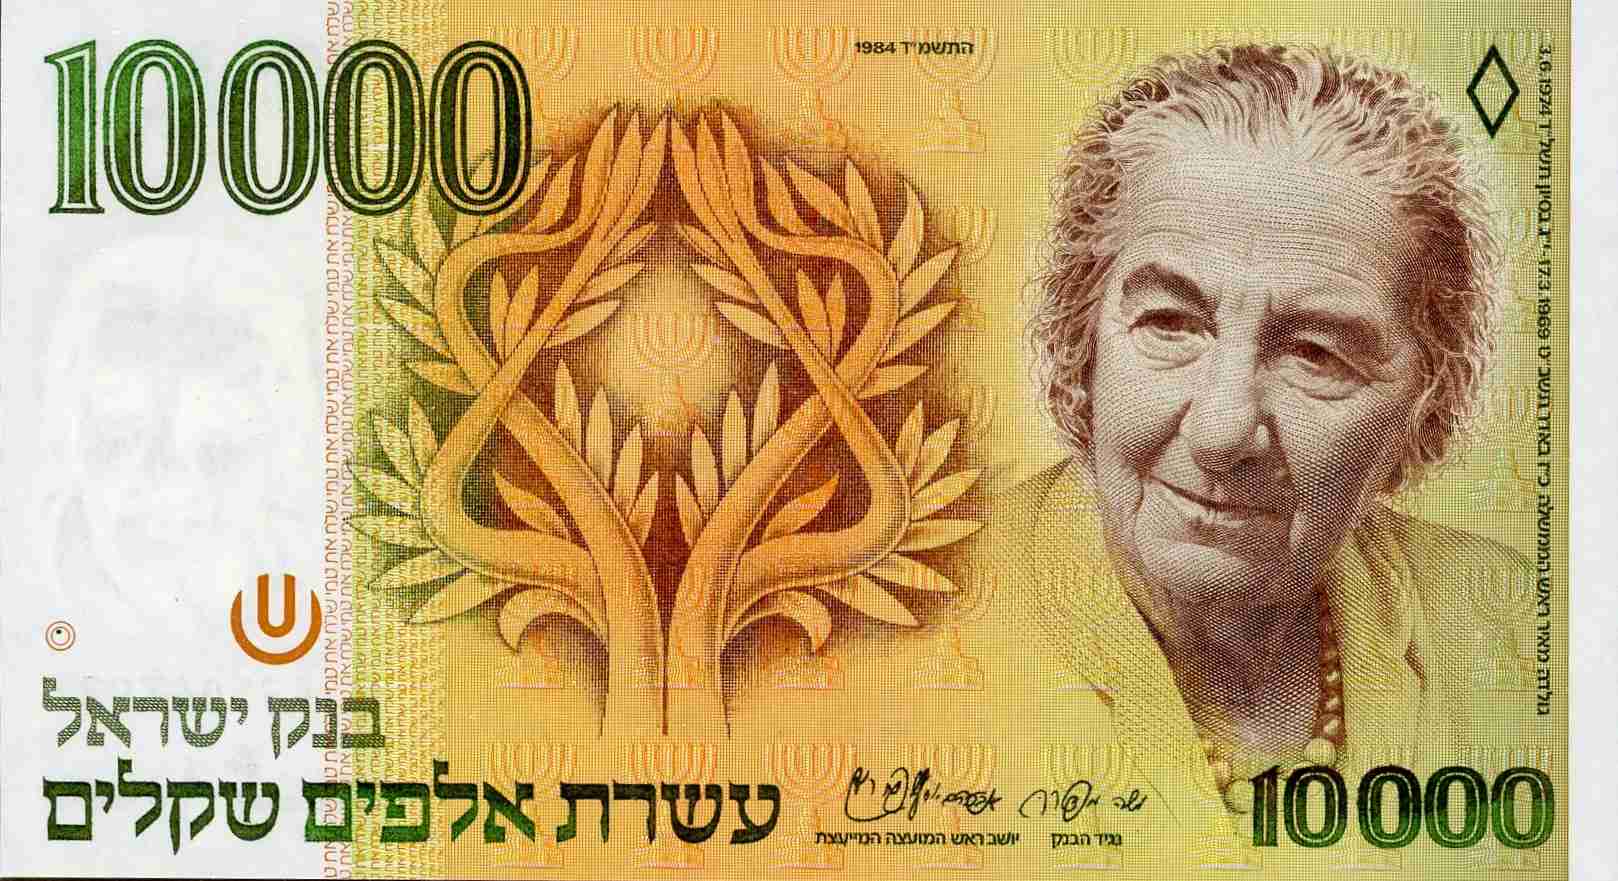 Israel 10000 Sheqalim P 51 1984 face  (2).jpg